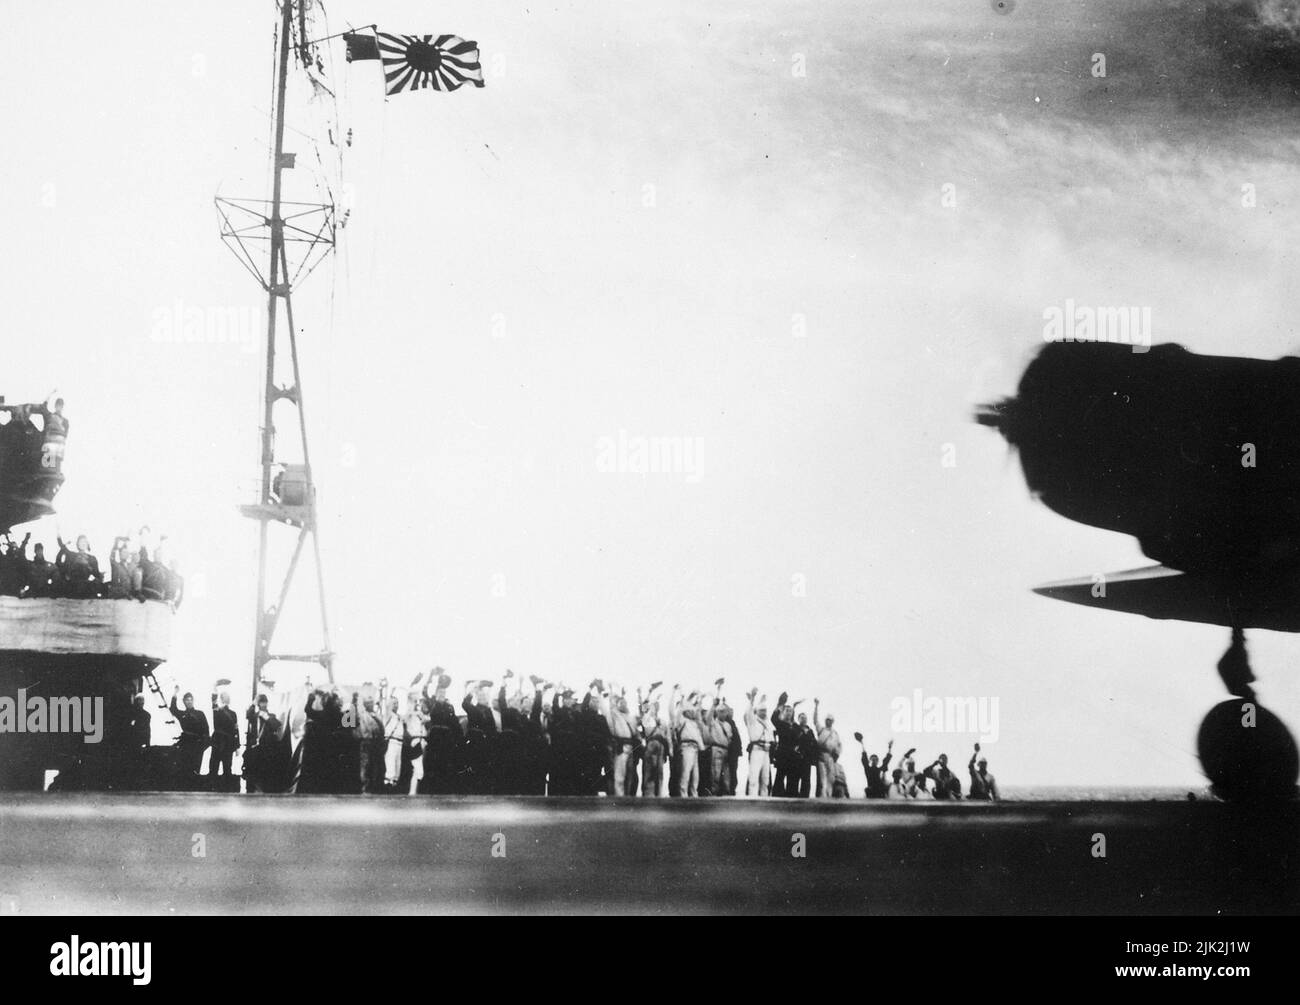 Una fotografia giapponese scattata a bordo di un vettore giapponese prima dell'attacco a Pearl Harbor, 7 dicembre 1941. Mostra agli uomini che alzano le braccia in saluto con la silhouette di un aereo e la bandiera del Sol Levante. Il propellore sull'aereo sta girando, quindi questa immagine è stata presa probabilmente mentre gli aerei stavano lasciando nella loro famosa e famigerata missione. Foto Stock